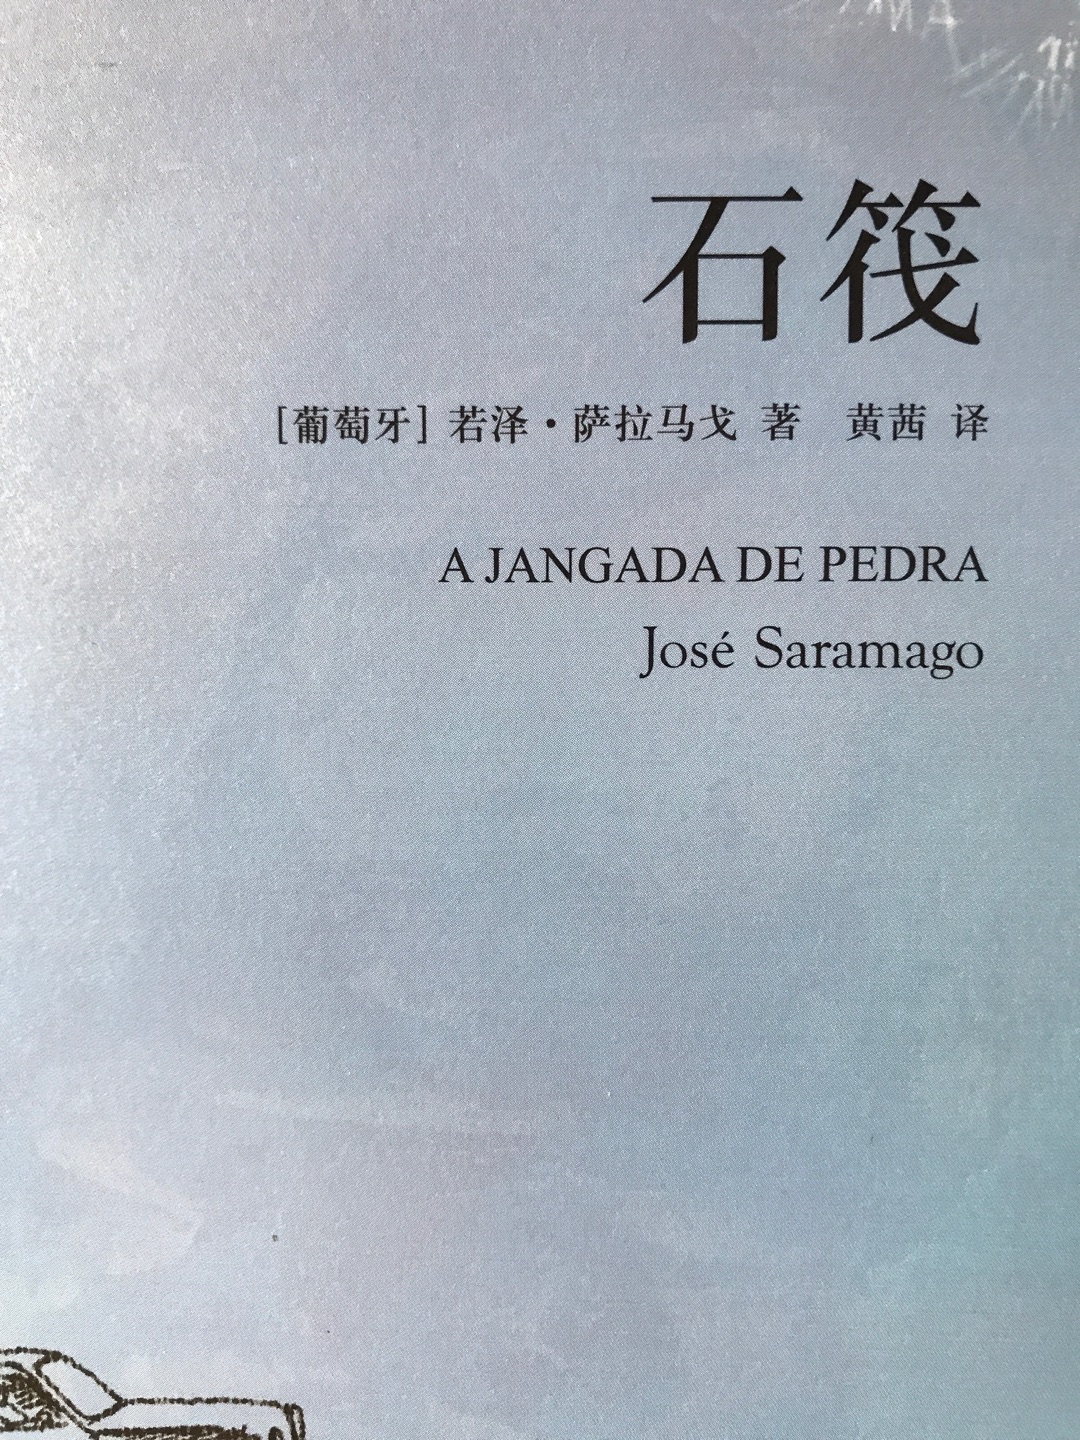 诺贝尔文学奖获得者萨拉马戈经典作品。